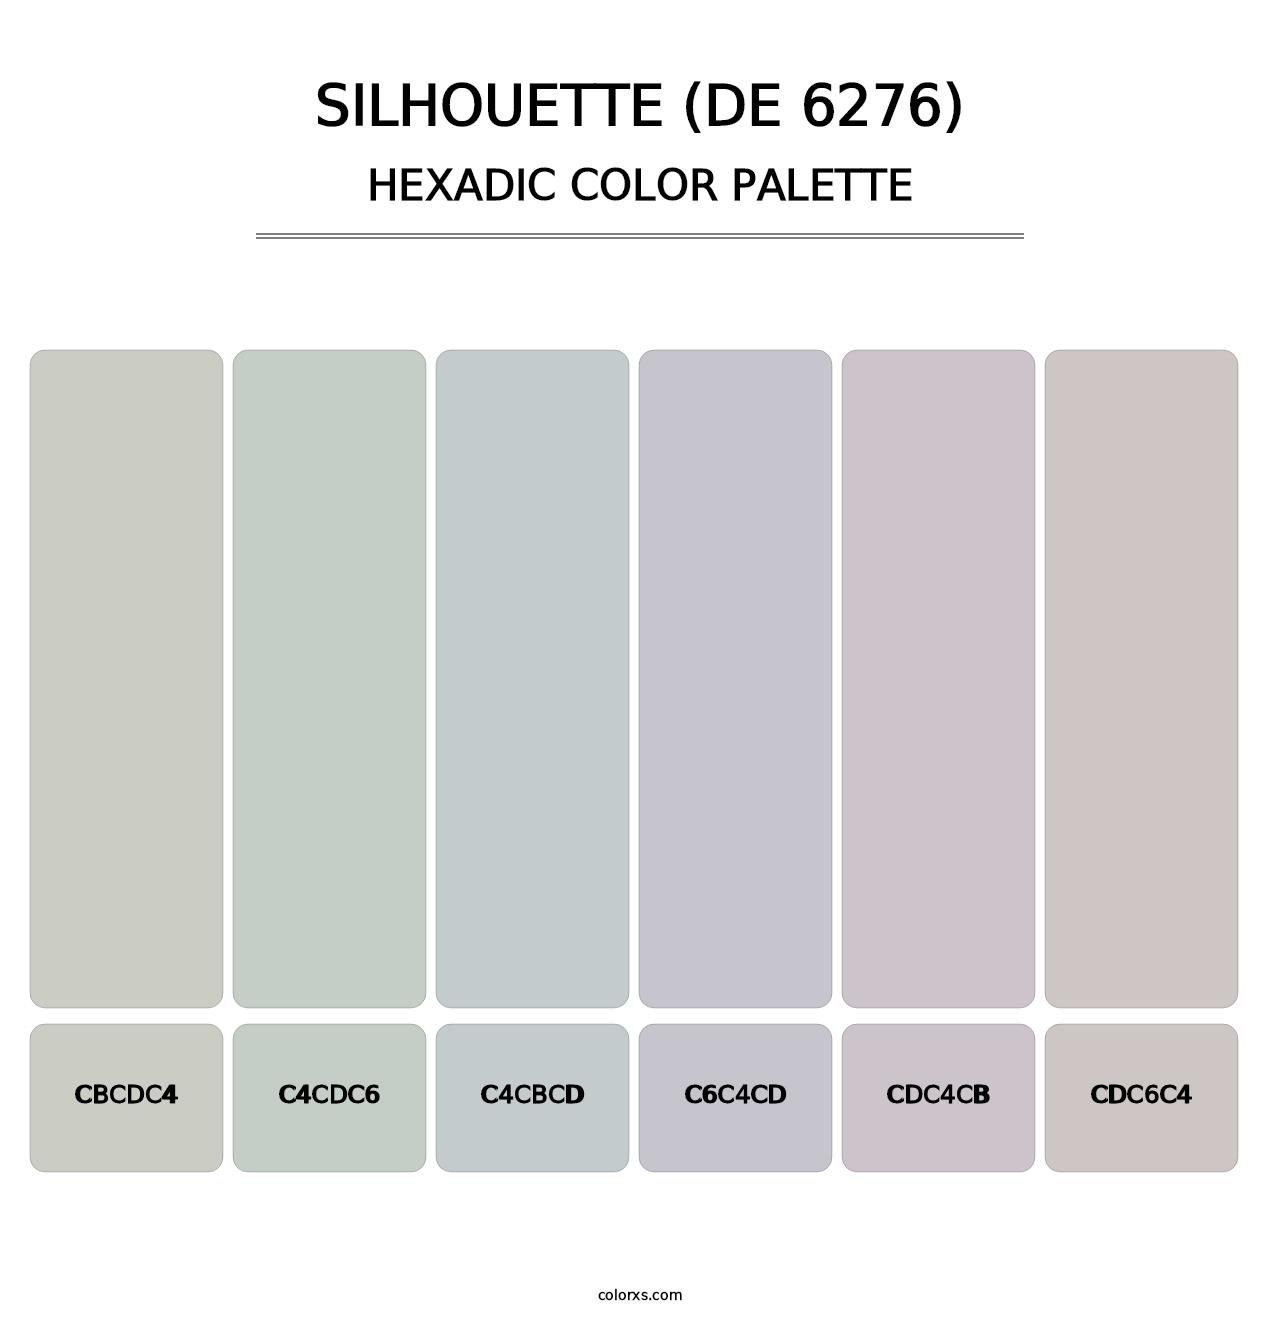 Silhouette (DE 6276) - Hexadic Color Palette